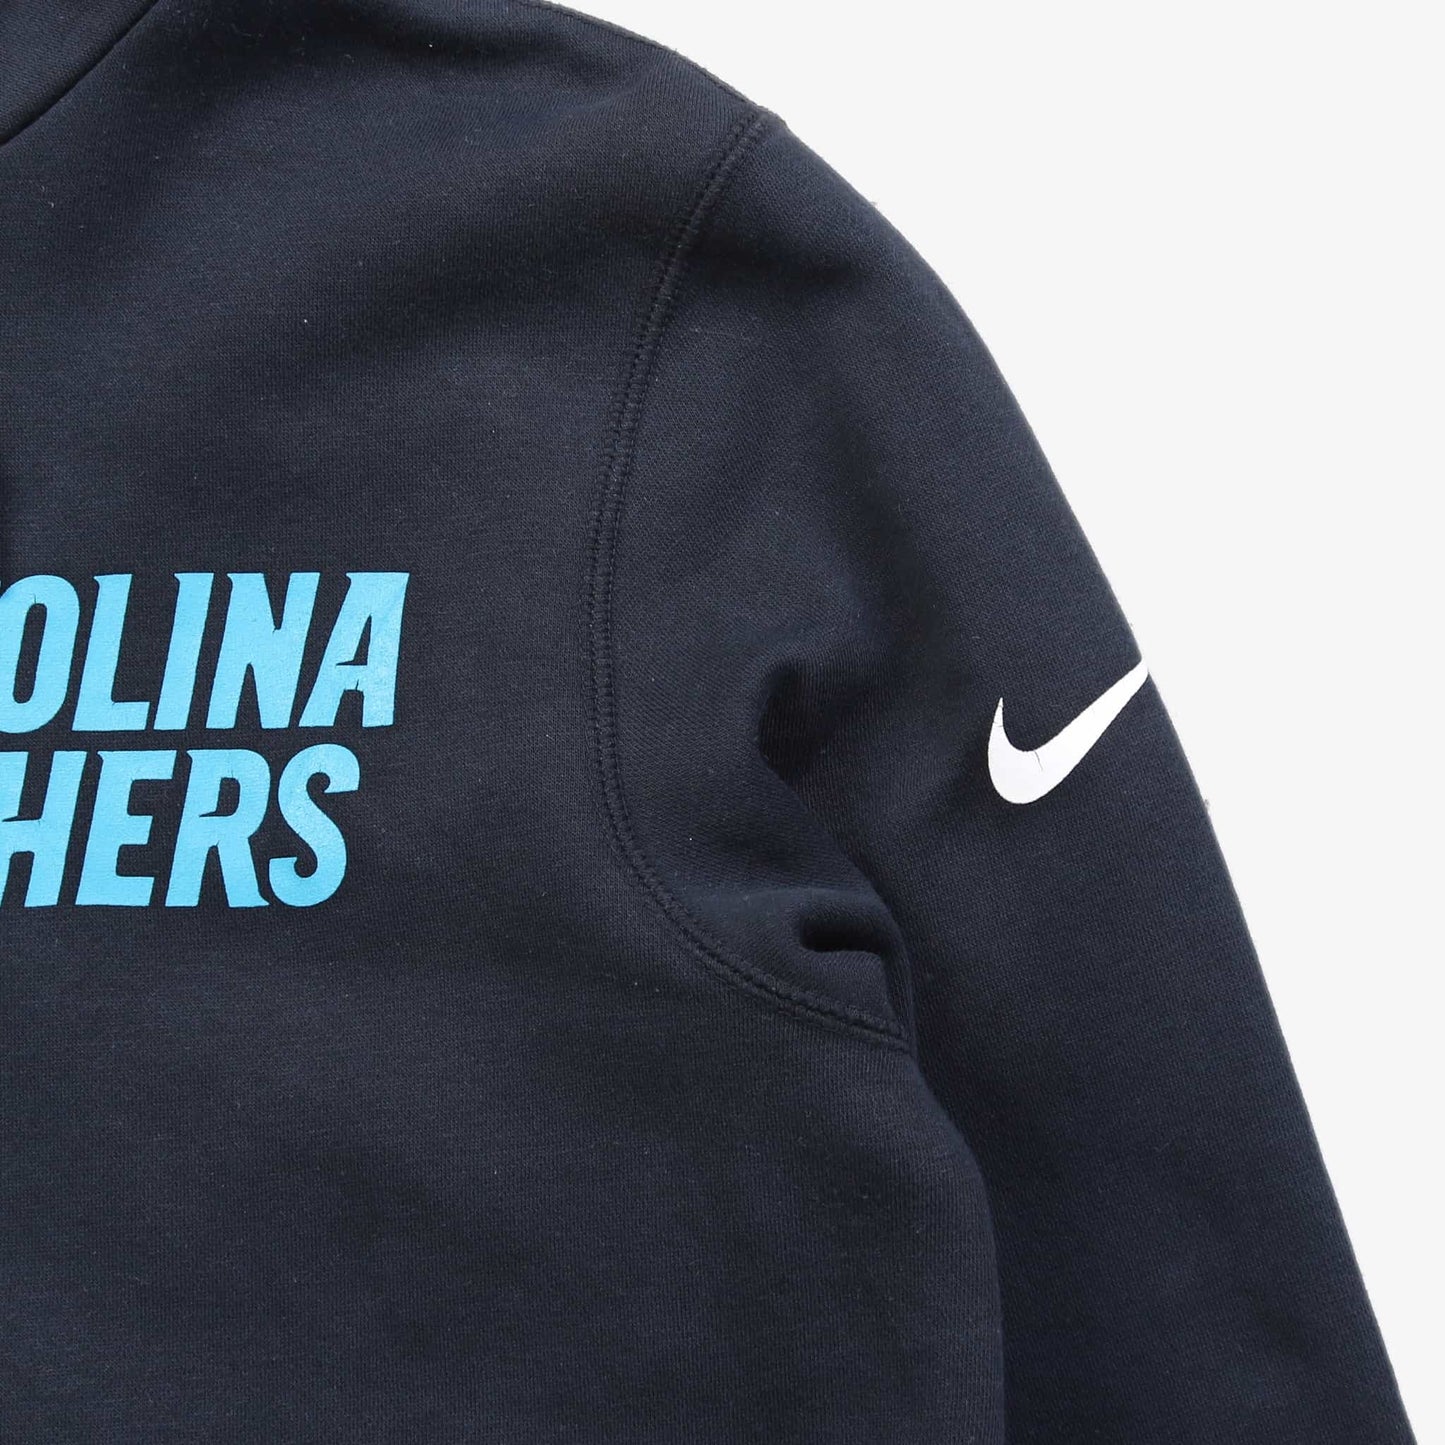 'Carolina Panthers' Sweatshirt - American Madness